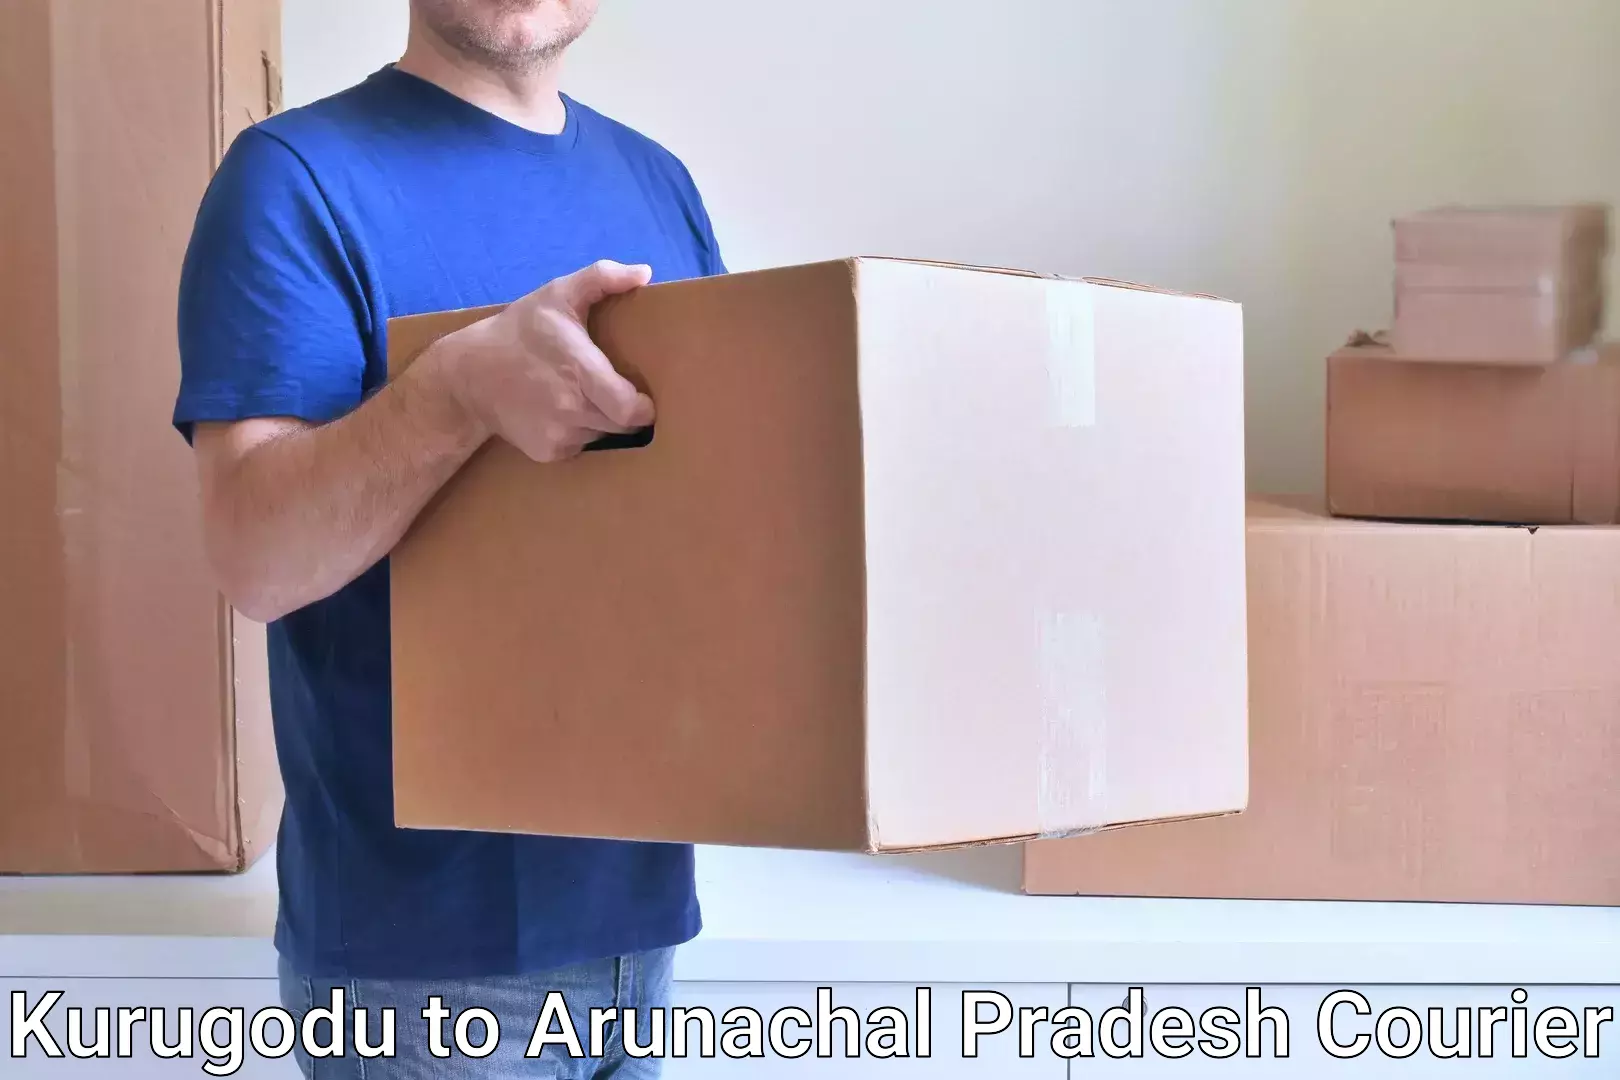 Next-day delivery options Kurugodu to Arunachal Pradesh